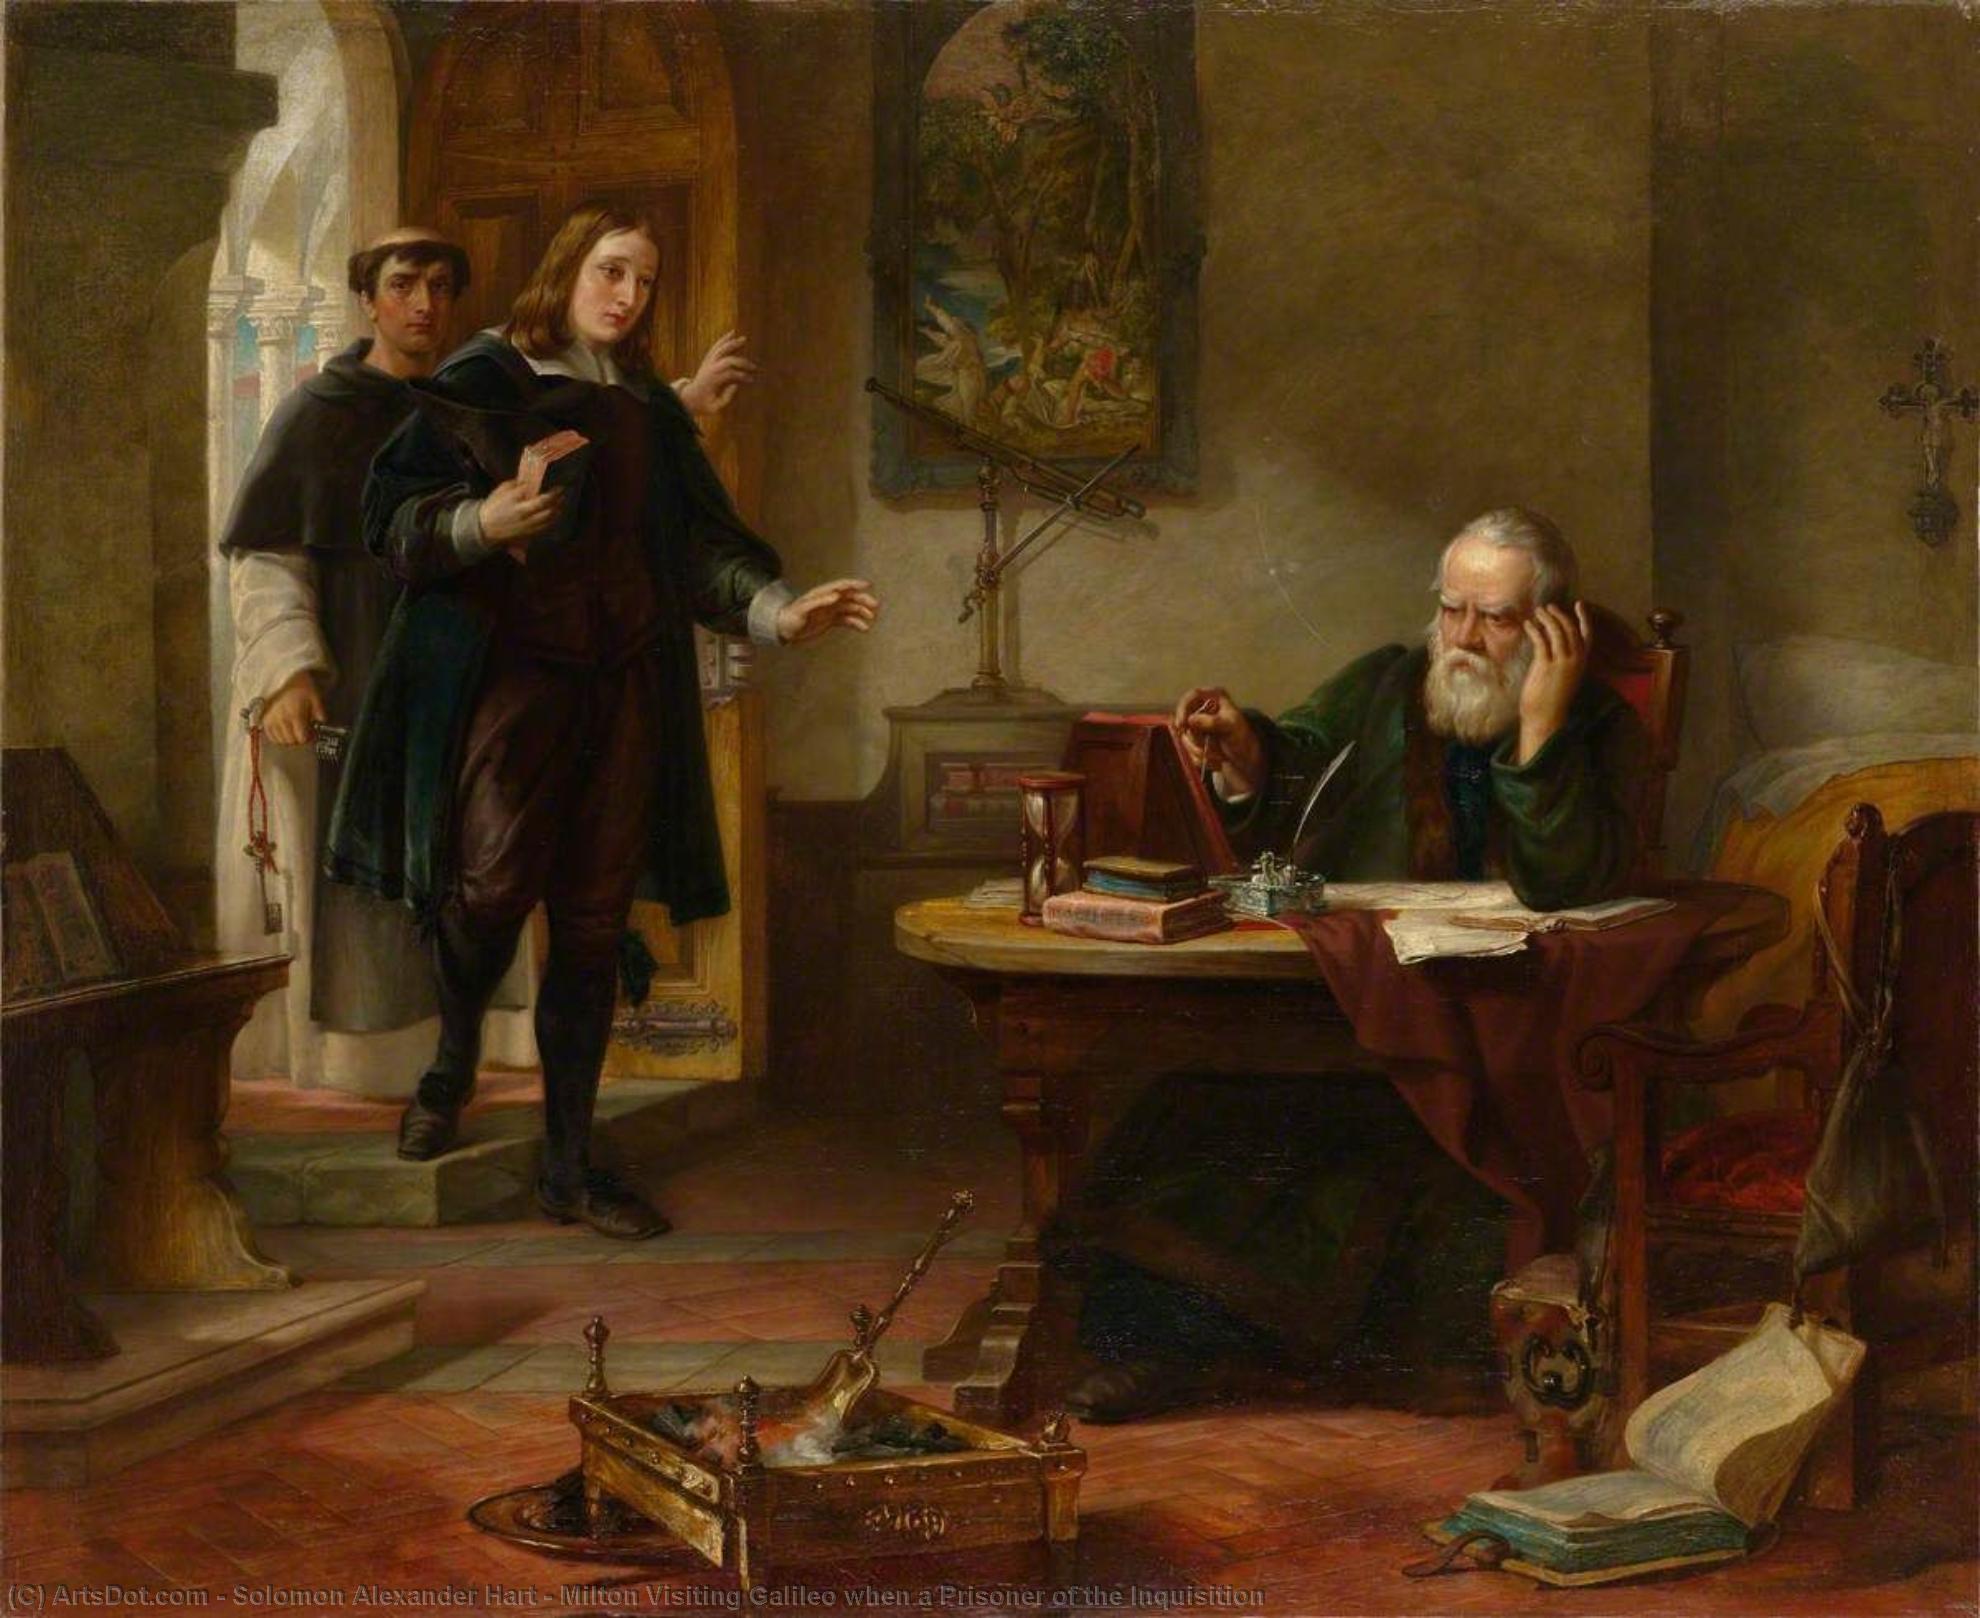 Comprar Reproducciones De Arte Del Museo Milton visitando Galileo cuando un prisionero de la Inquisición, 1847 de Solomon Alexander Hart (1806-1881, United Kingdom) | ArtsDot.com